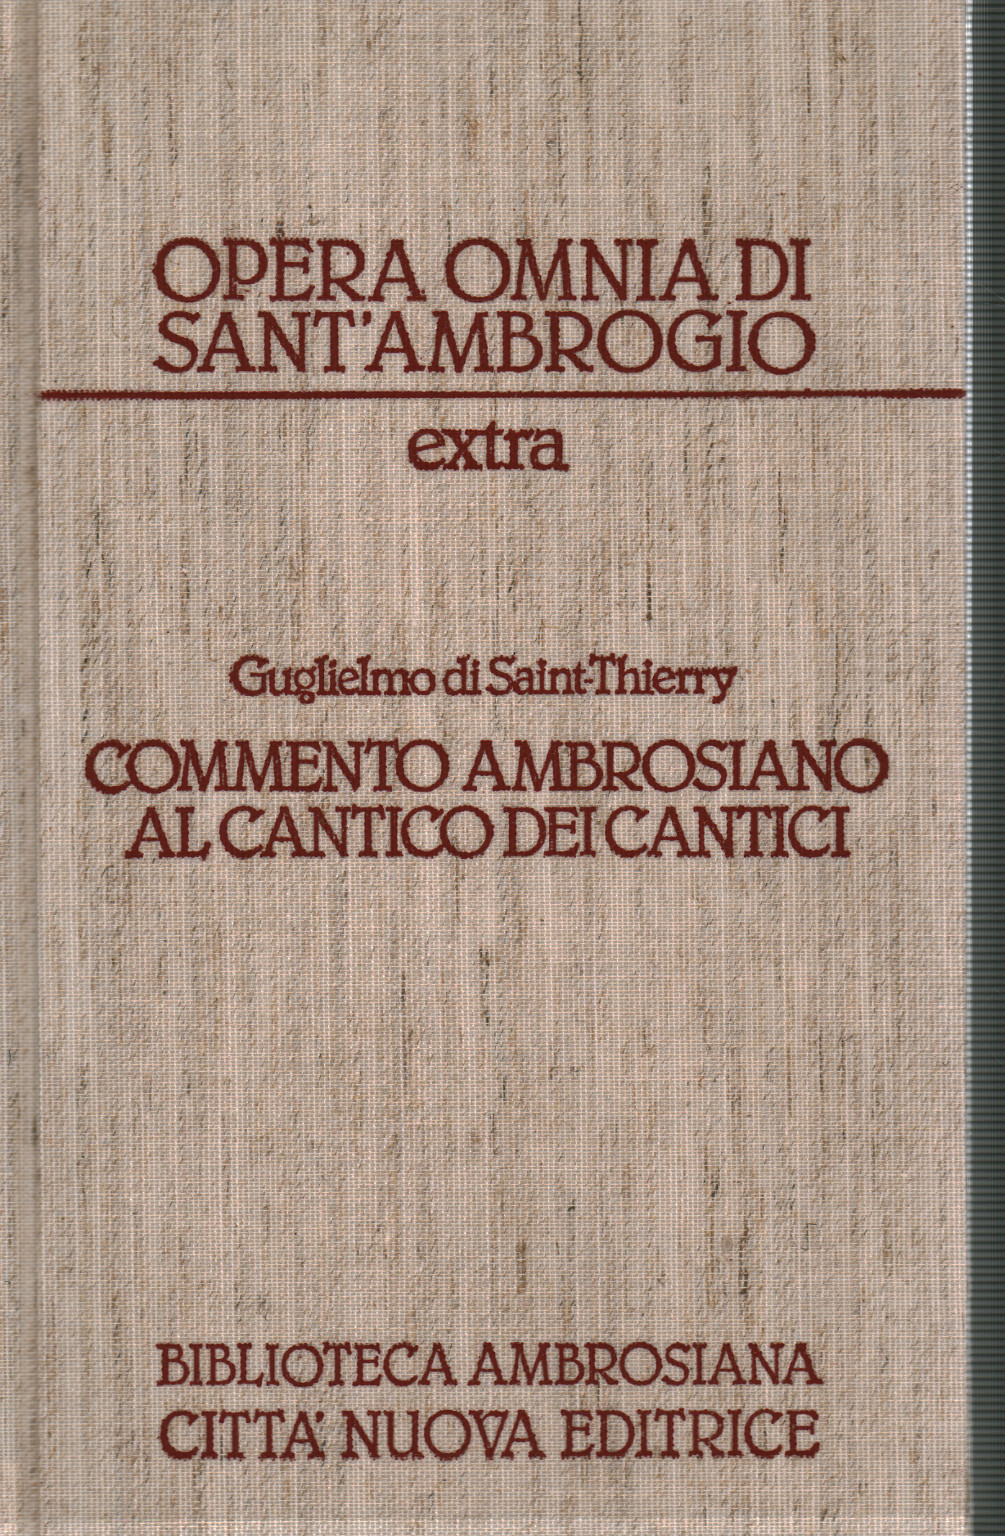 Wilhelm von Sain-Thierry Ambrosianischer Kommentar zu c, Sant'Ambrogio